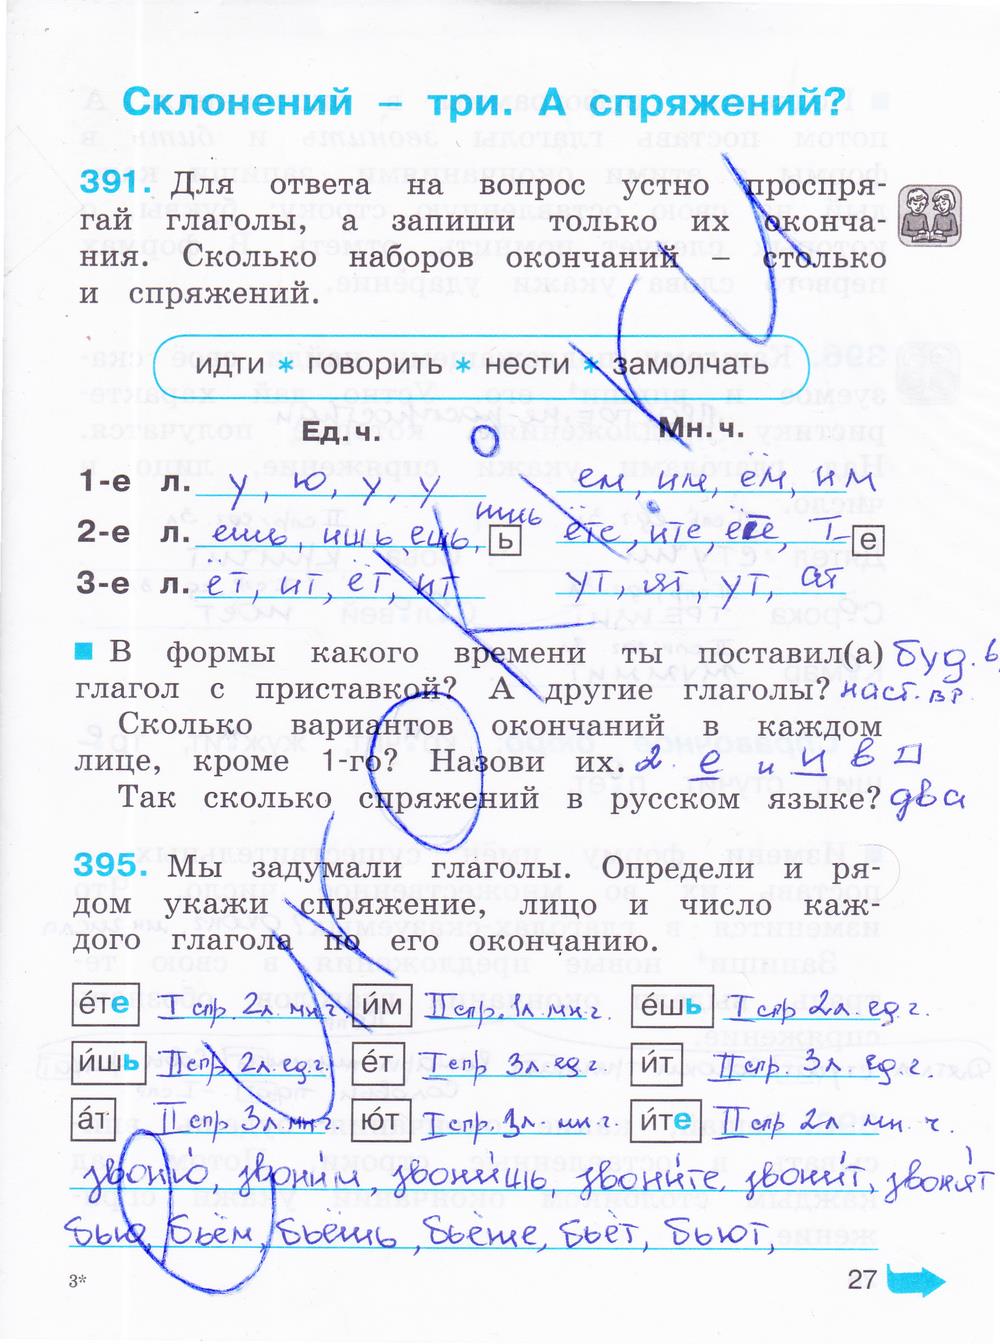 гдз 4 класс рабочая тетрадь часть 2 страница 27 русский язык Соловейчик, Кузьменко